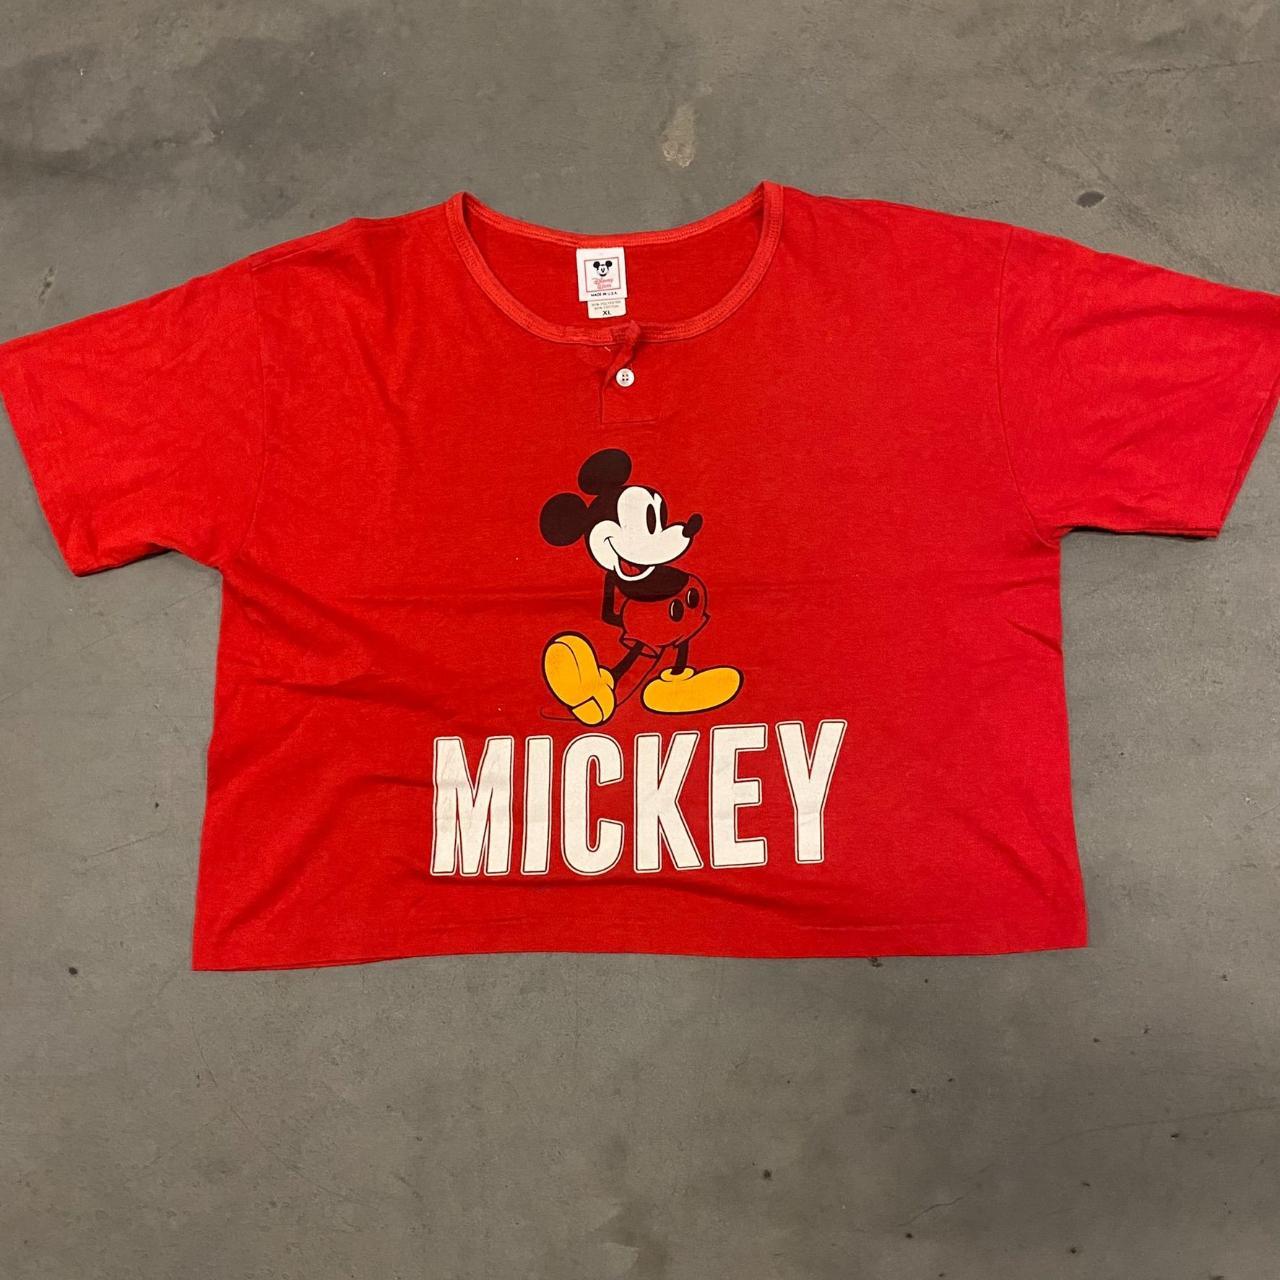 Disney Men's T-Shirt - Red - XL